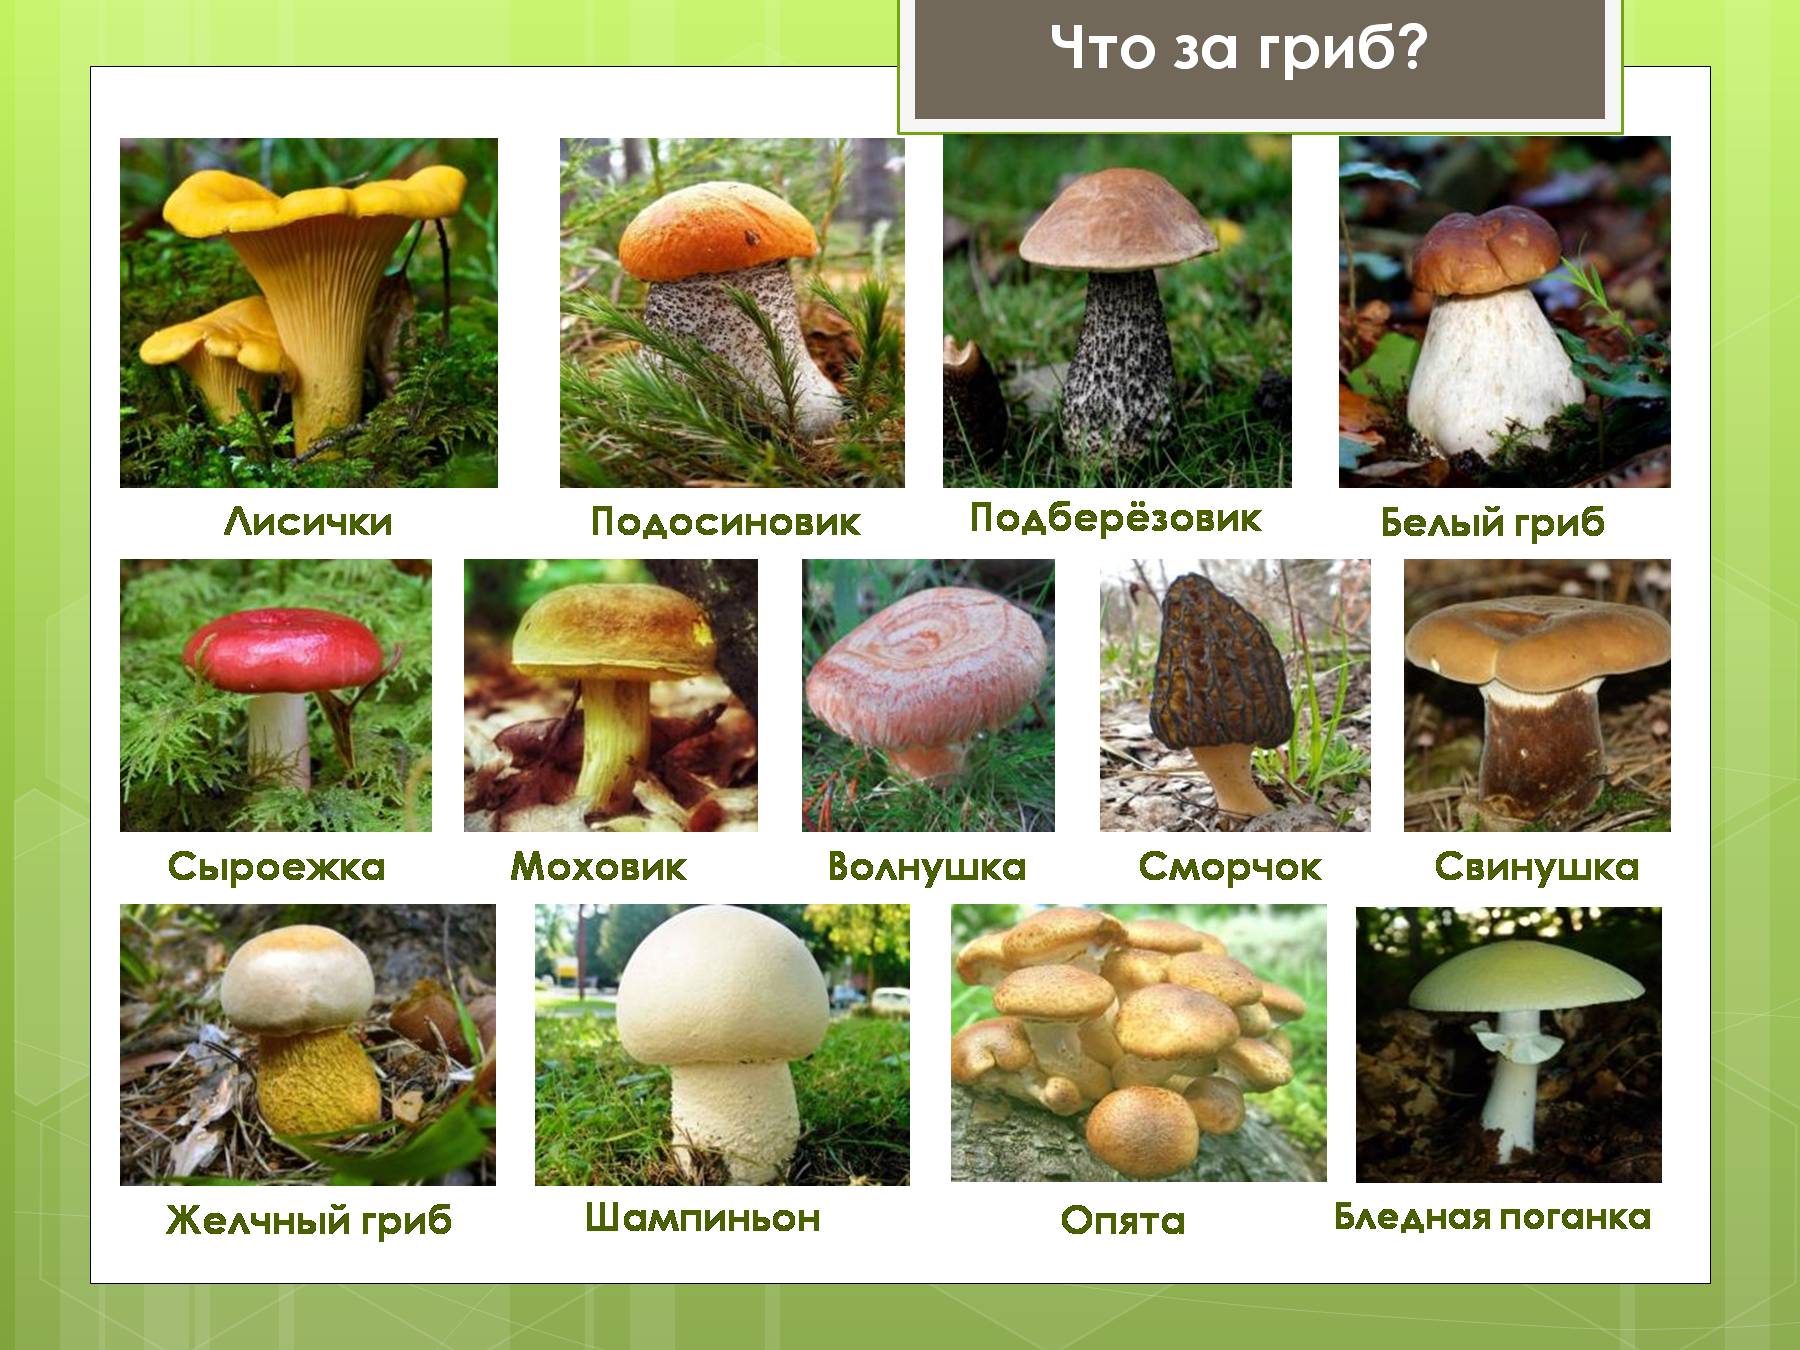 Классификация грибов по съедобности